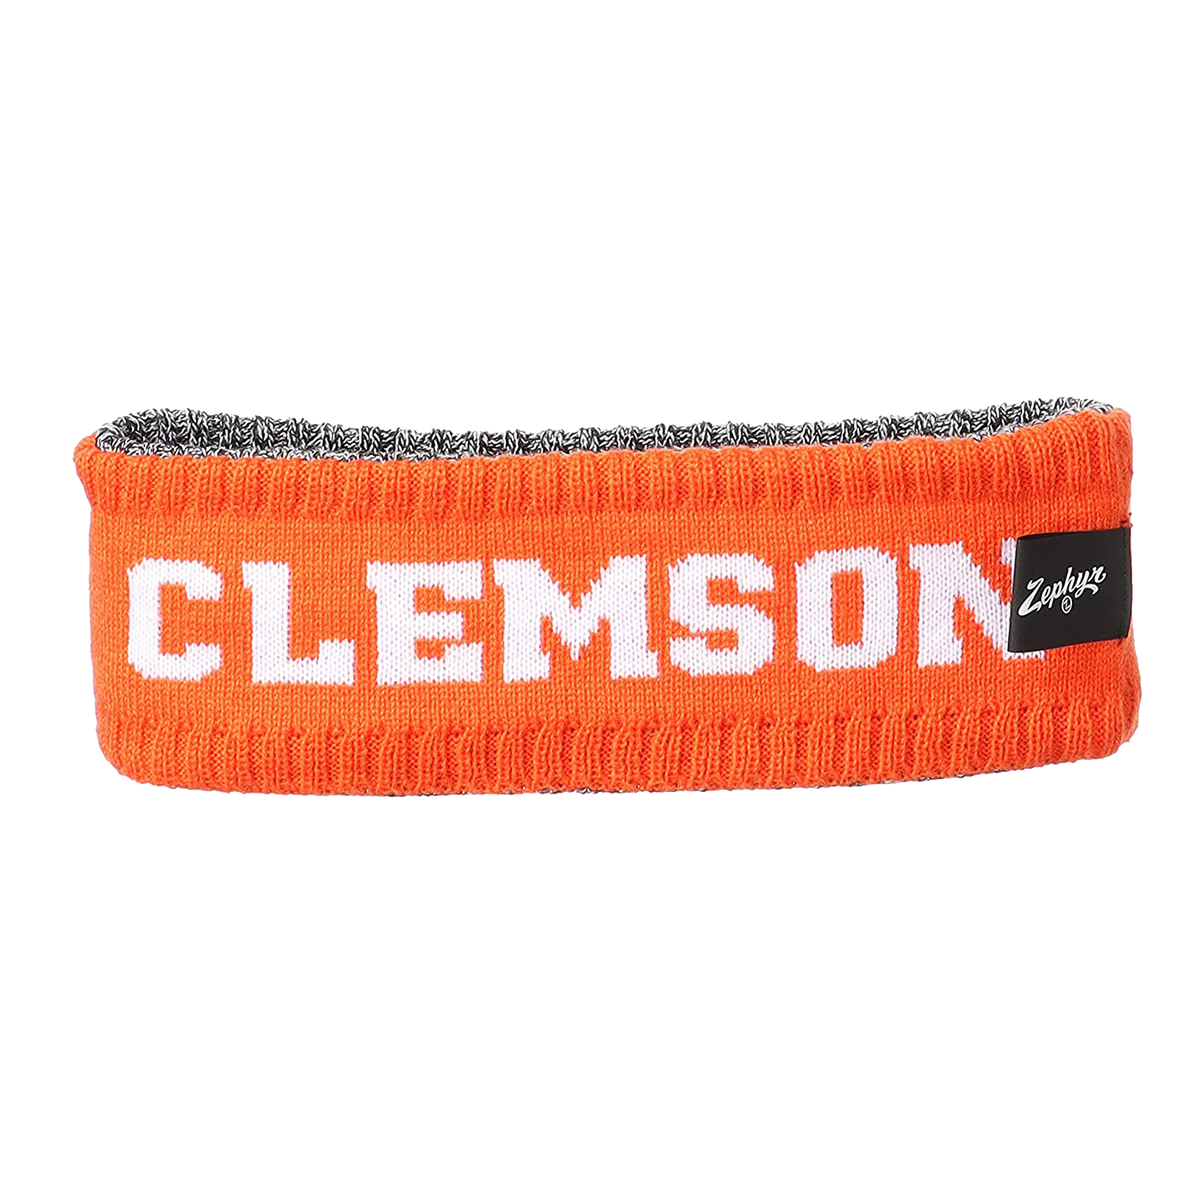 Clemson Killington Headband with CLEMSON